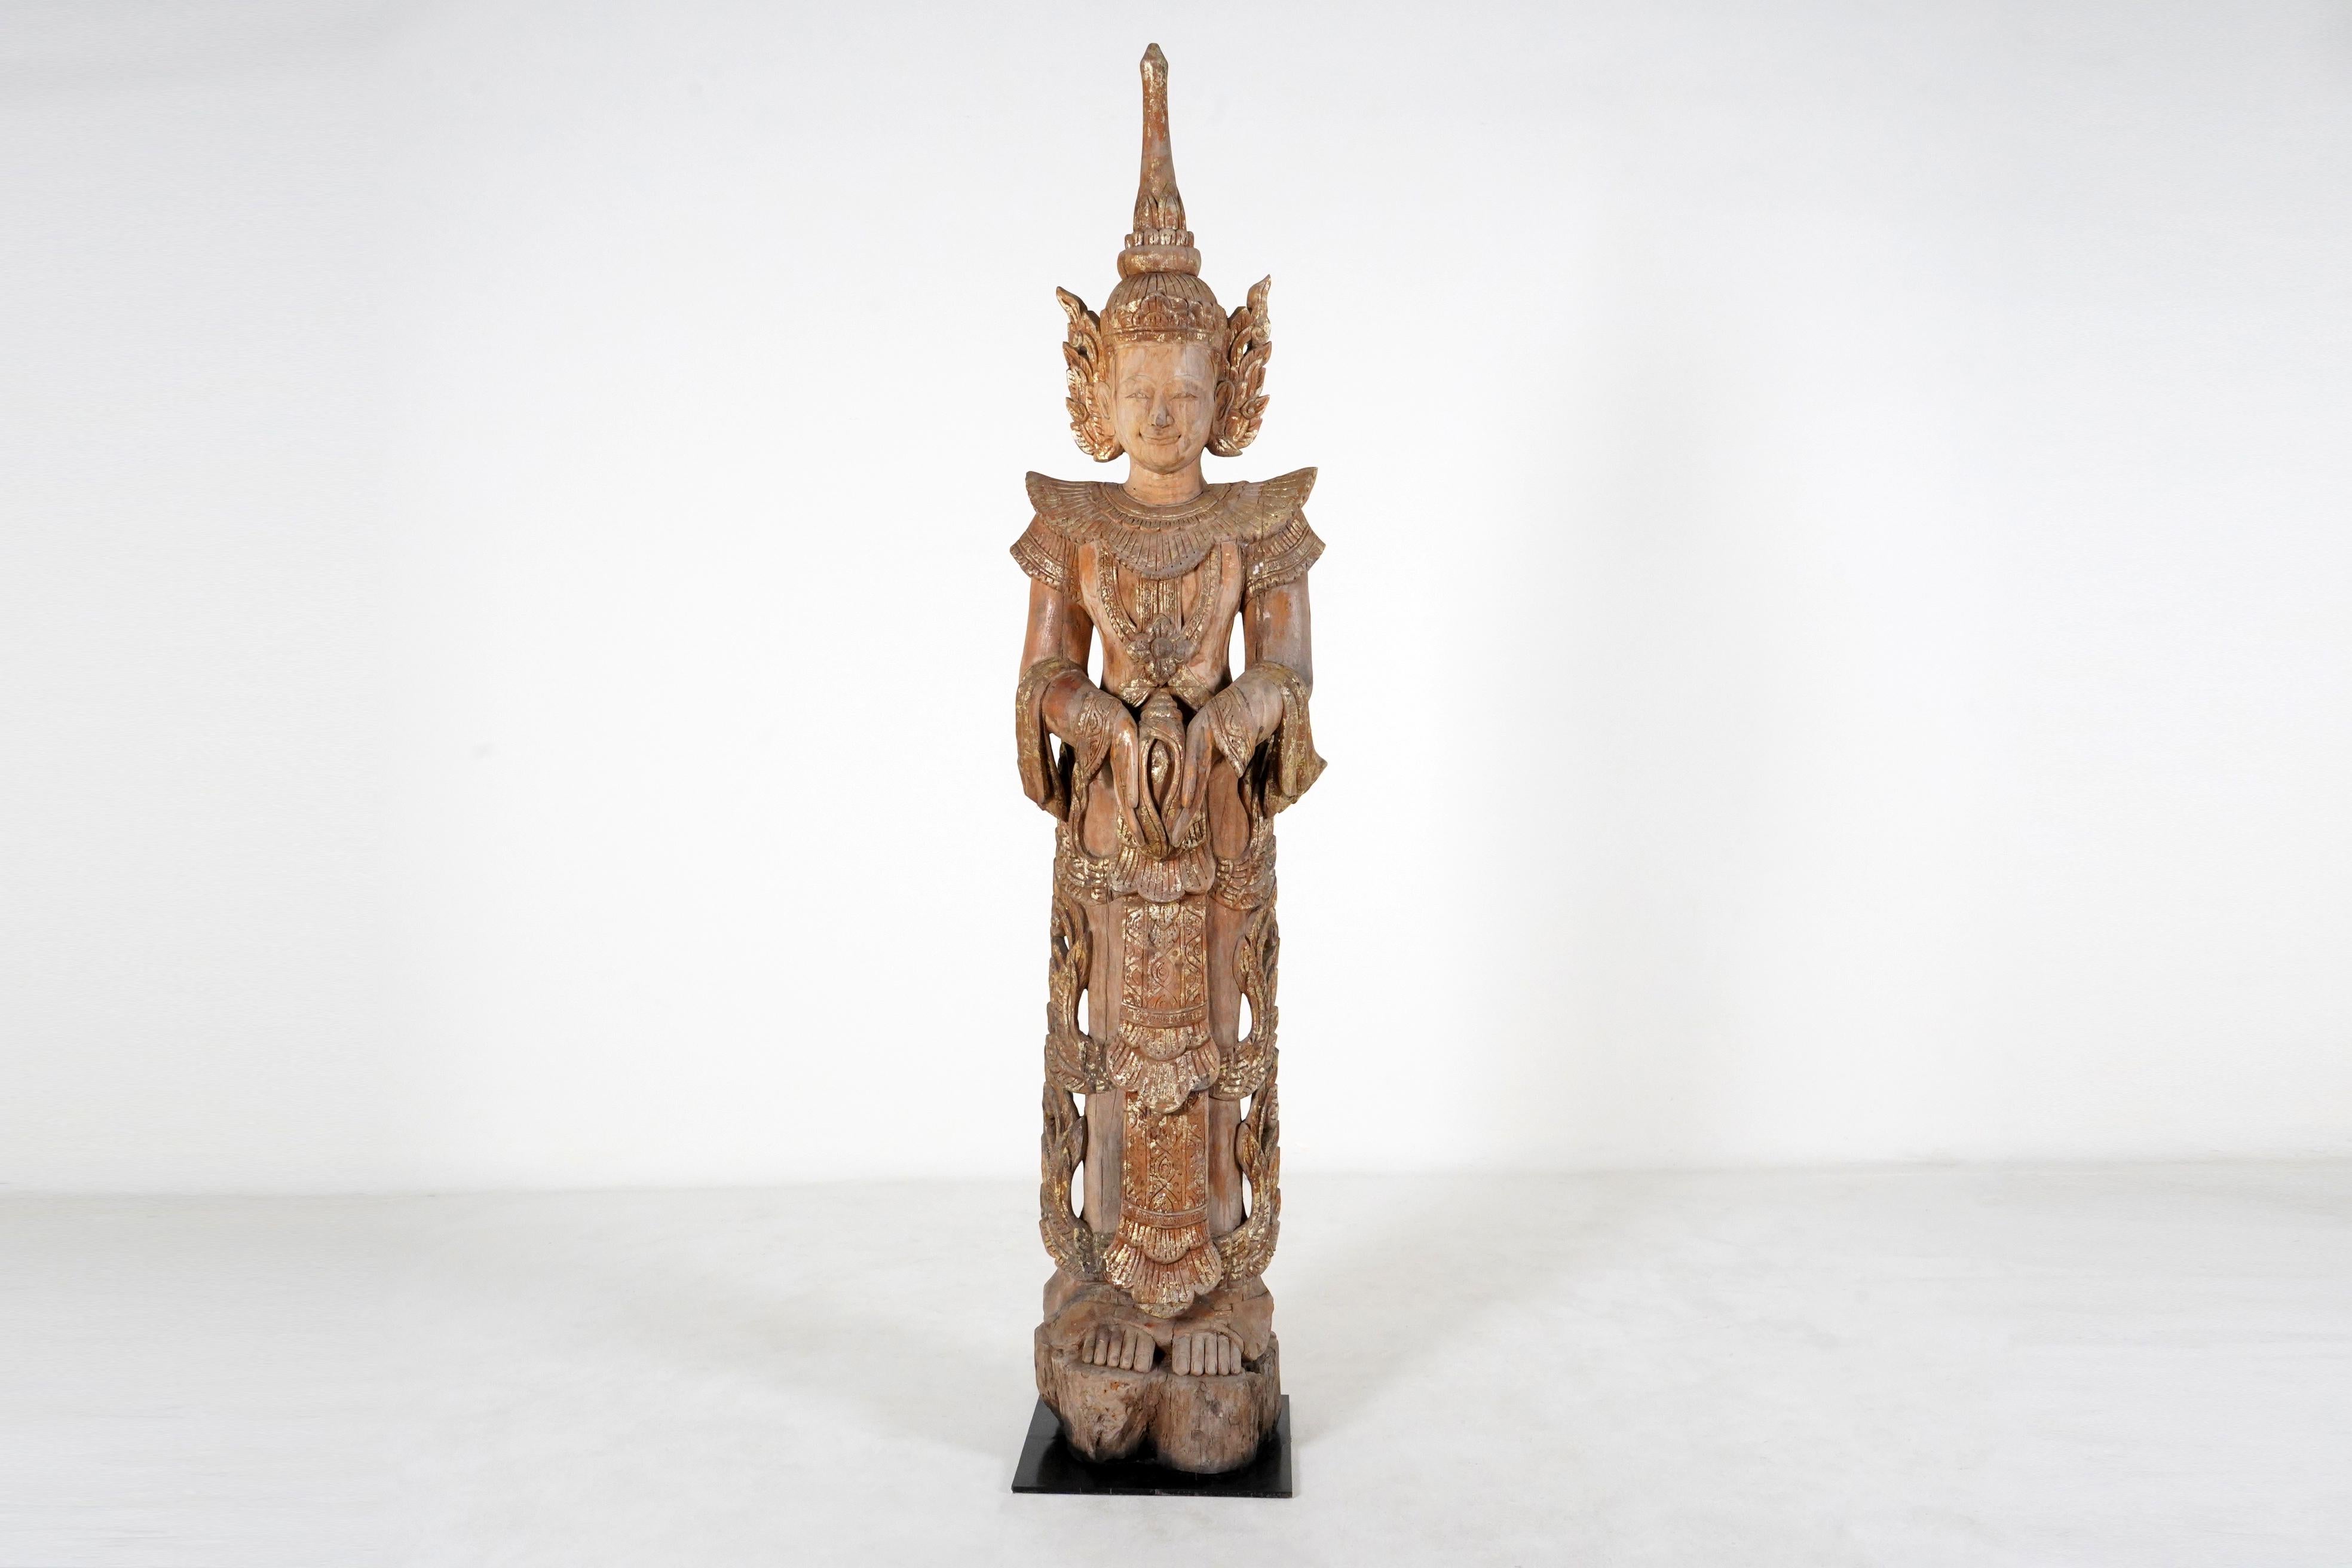 Thailändische Tempel enthielten verschiedene Arten von geschnitzten Figuren, darunter Buddhas, Apostel und Engel. Dieser große Segensengel ist den Skulpturen nachempfunden, die Altäre oder Eingänge flankierten. Thailändische Buddhisten glauben wie